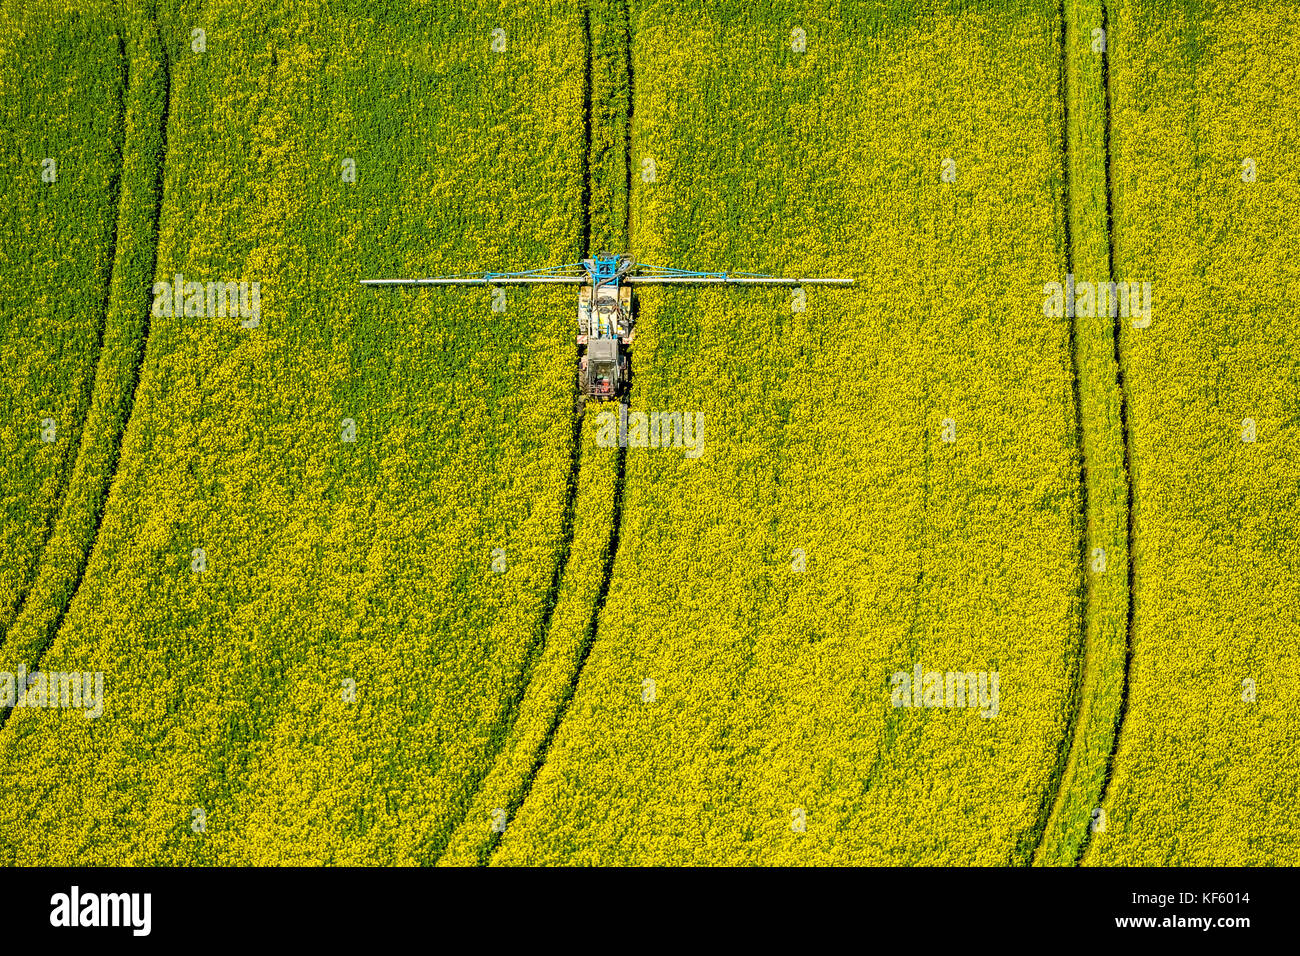 Träcker sprühte Pestizide auf ein grünes Maisfeld, Landwirtschaft, Warstein, Sauerland, Nordrhein-Westfalen, Deutschland, Europa, Aerial View, Aerial, aerial, aeri Stockfoto